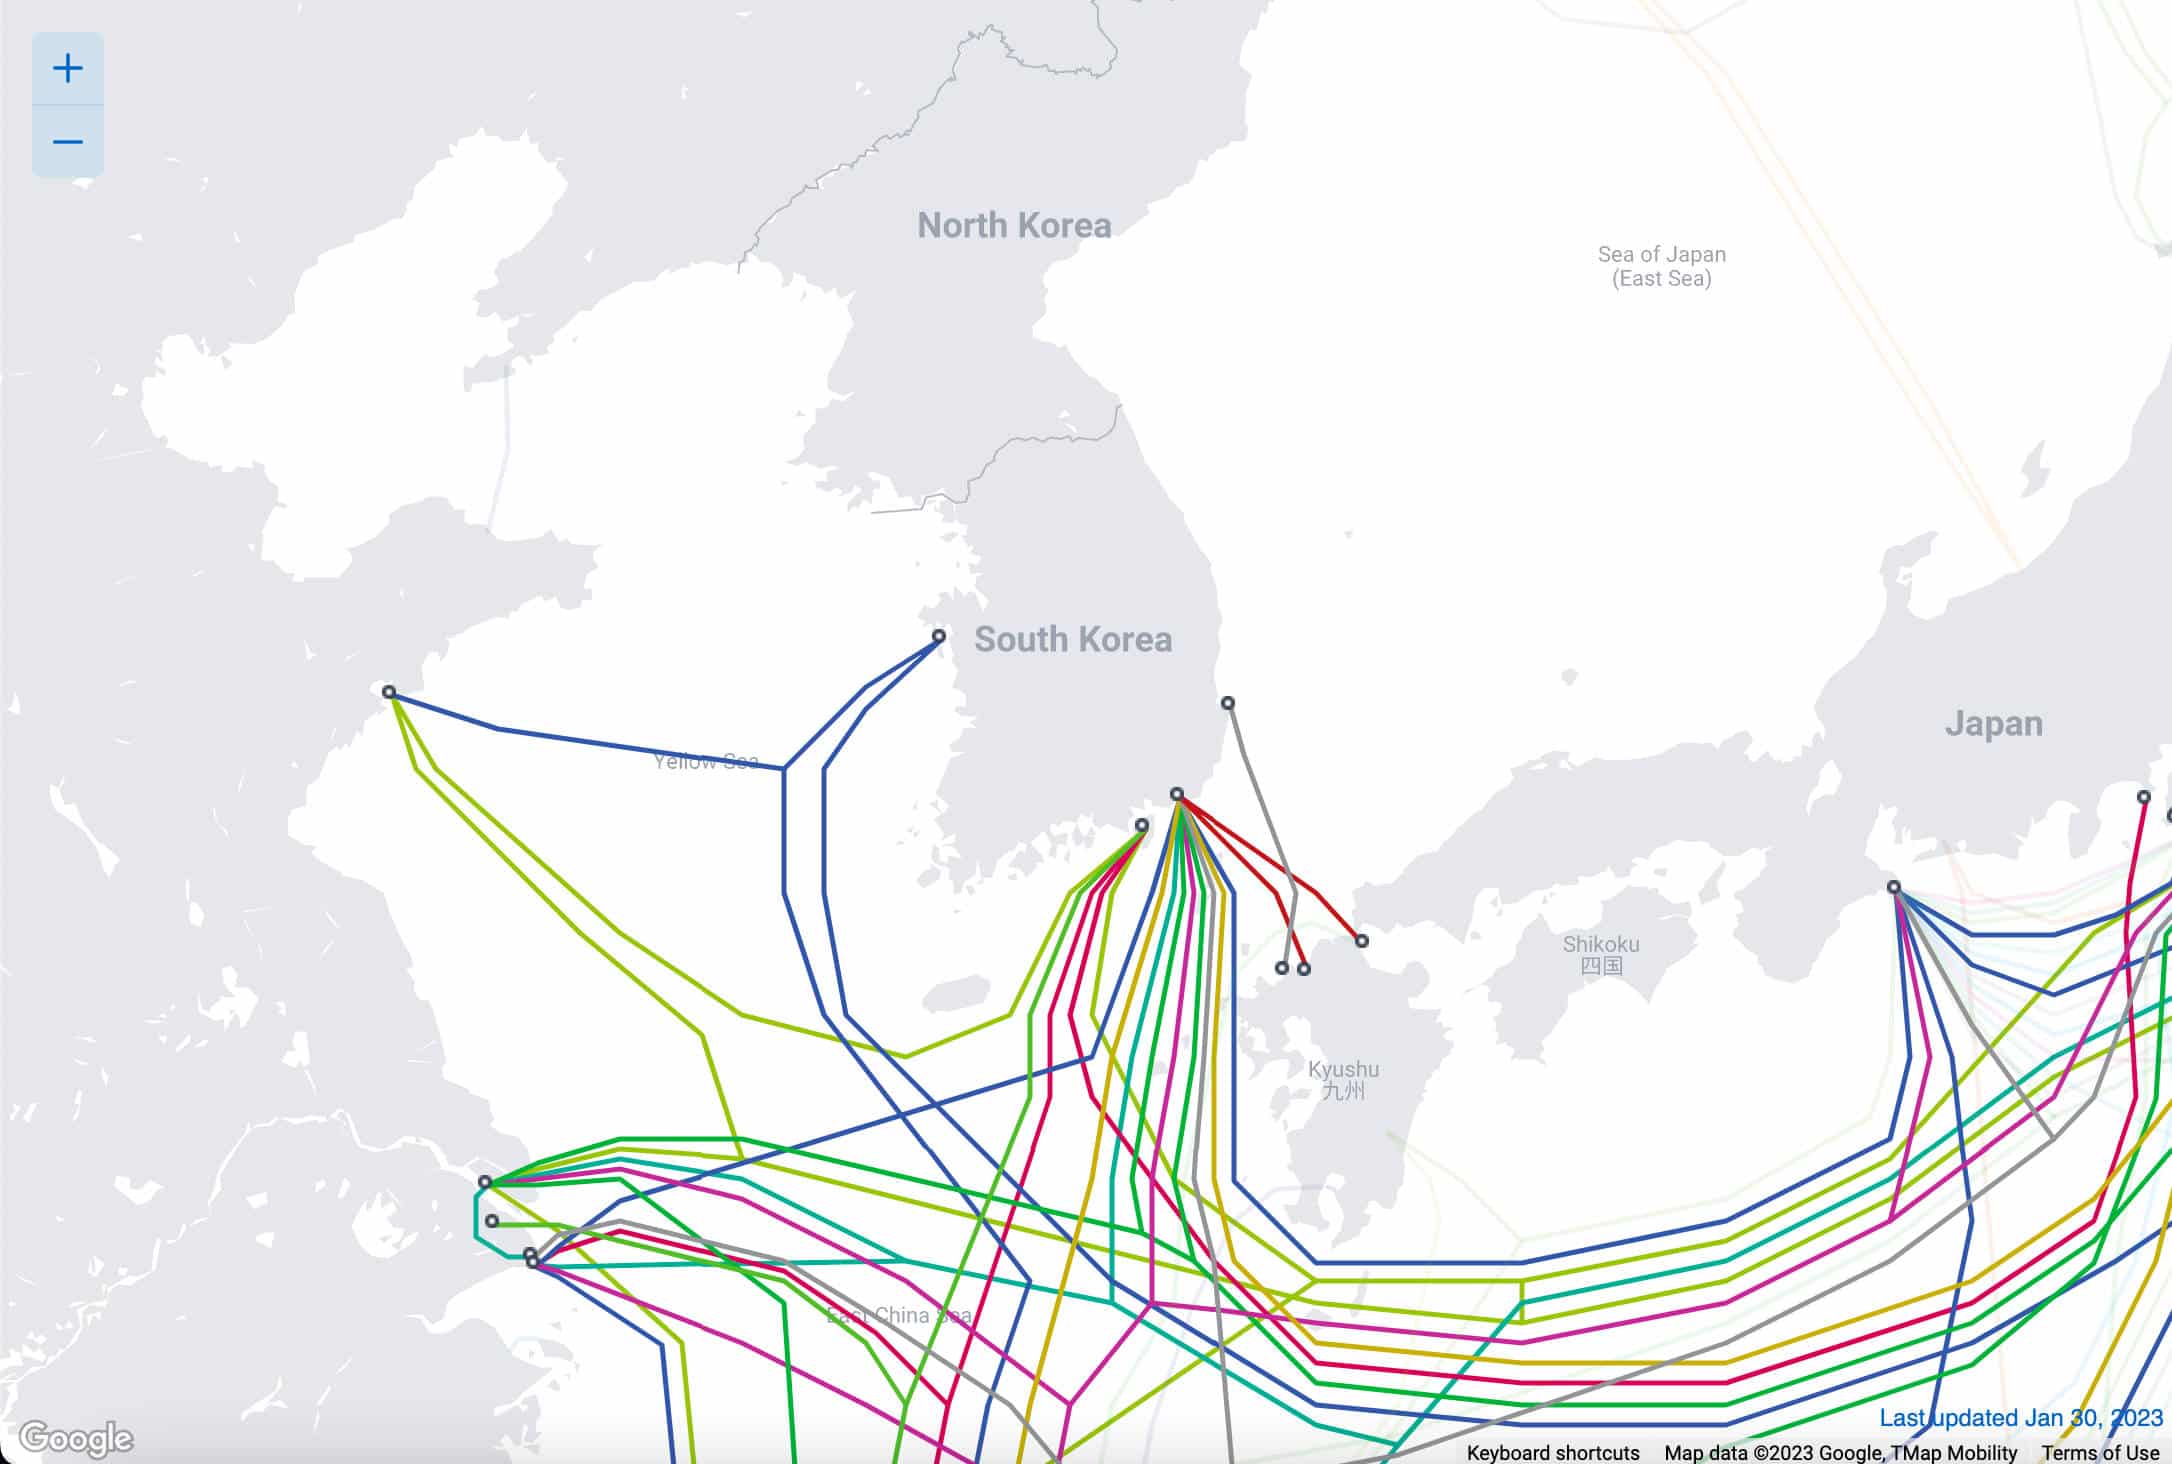 Mappa dei cavi sottomarini che collegano la Corea del Sud